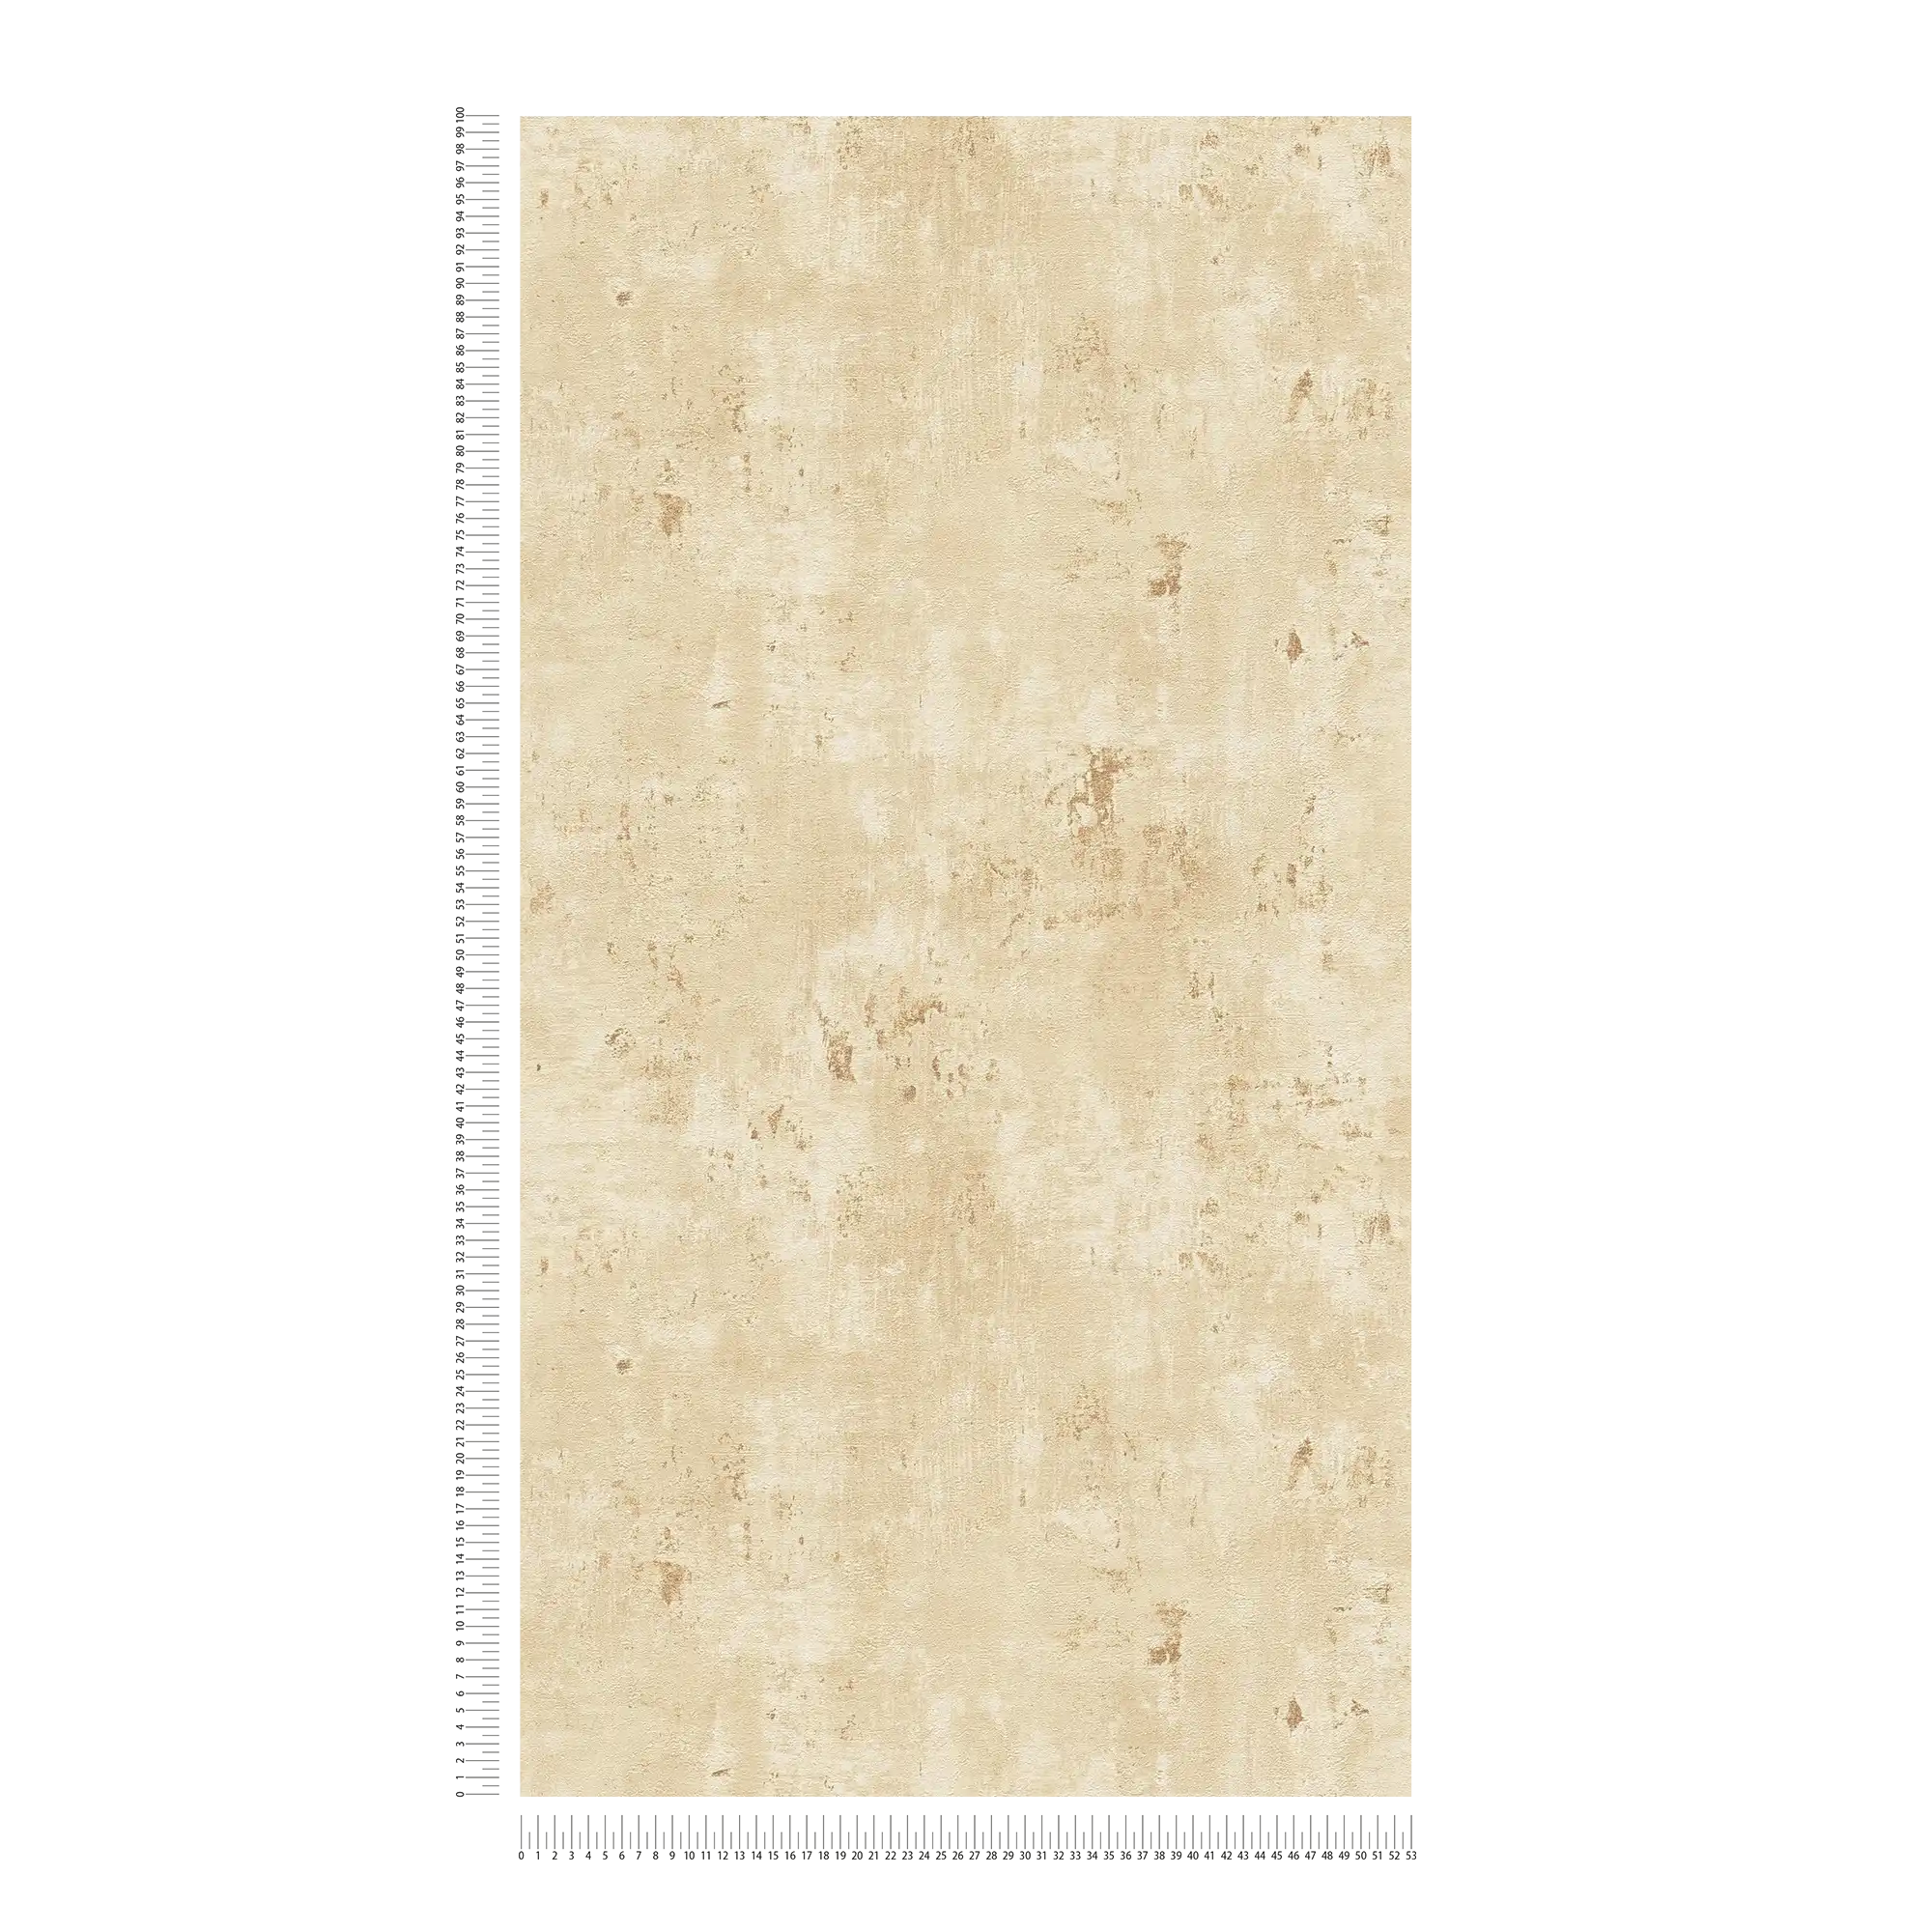             papier peint en papier intissé aspect usé avec accents métalliques - beige, or
        